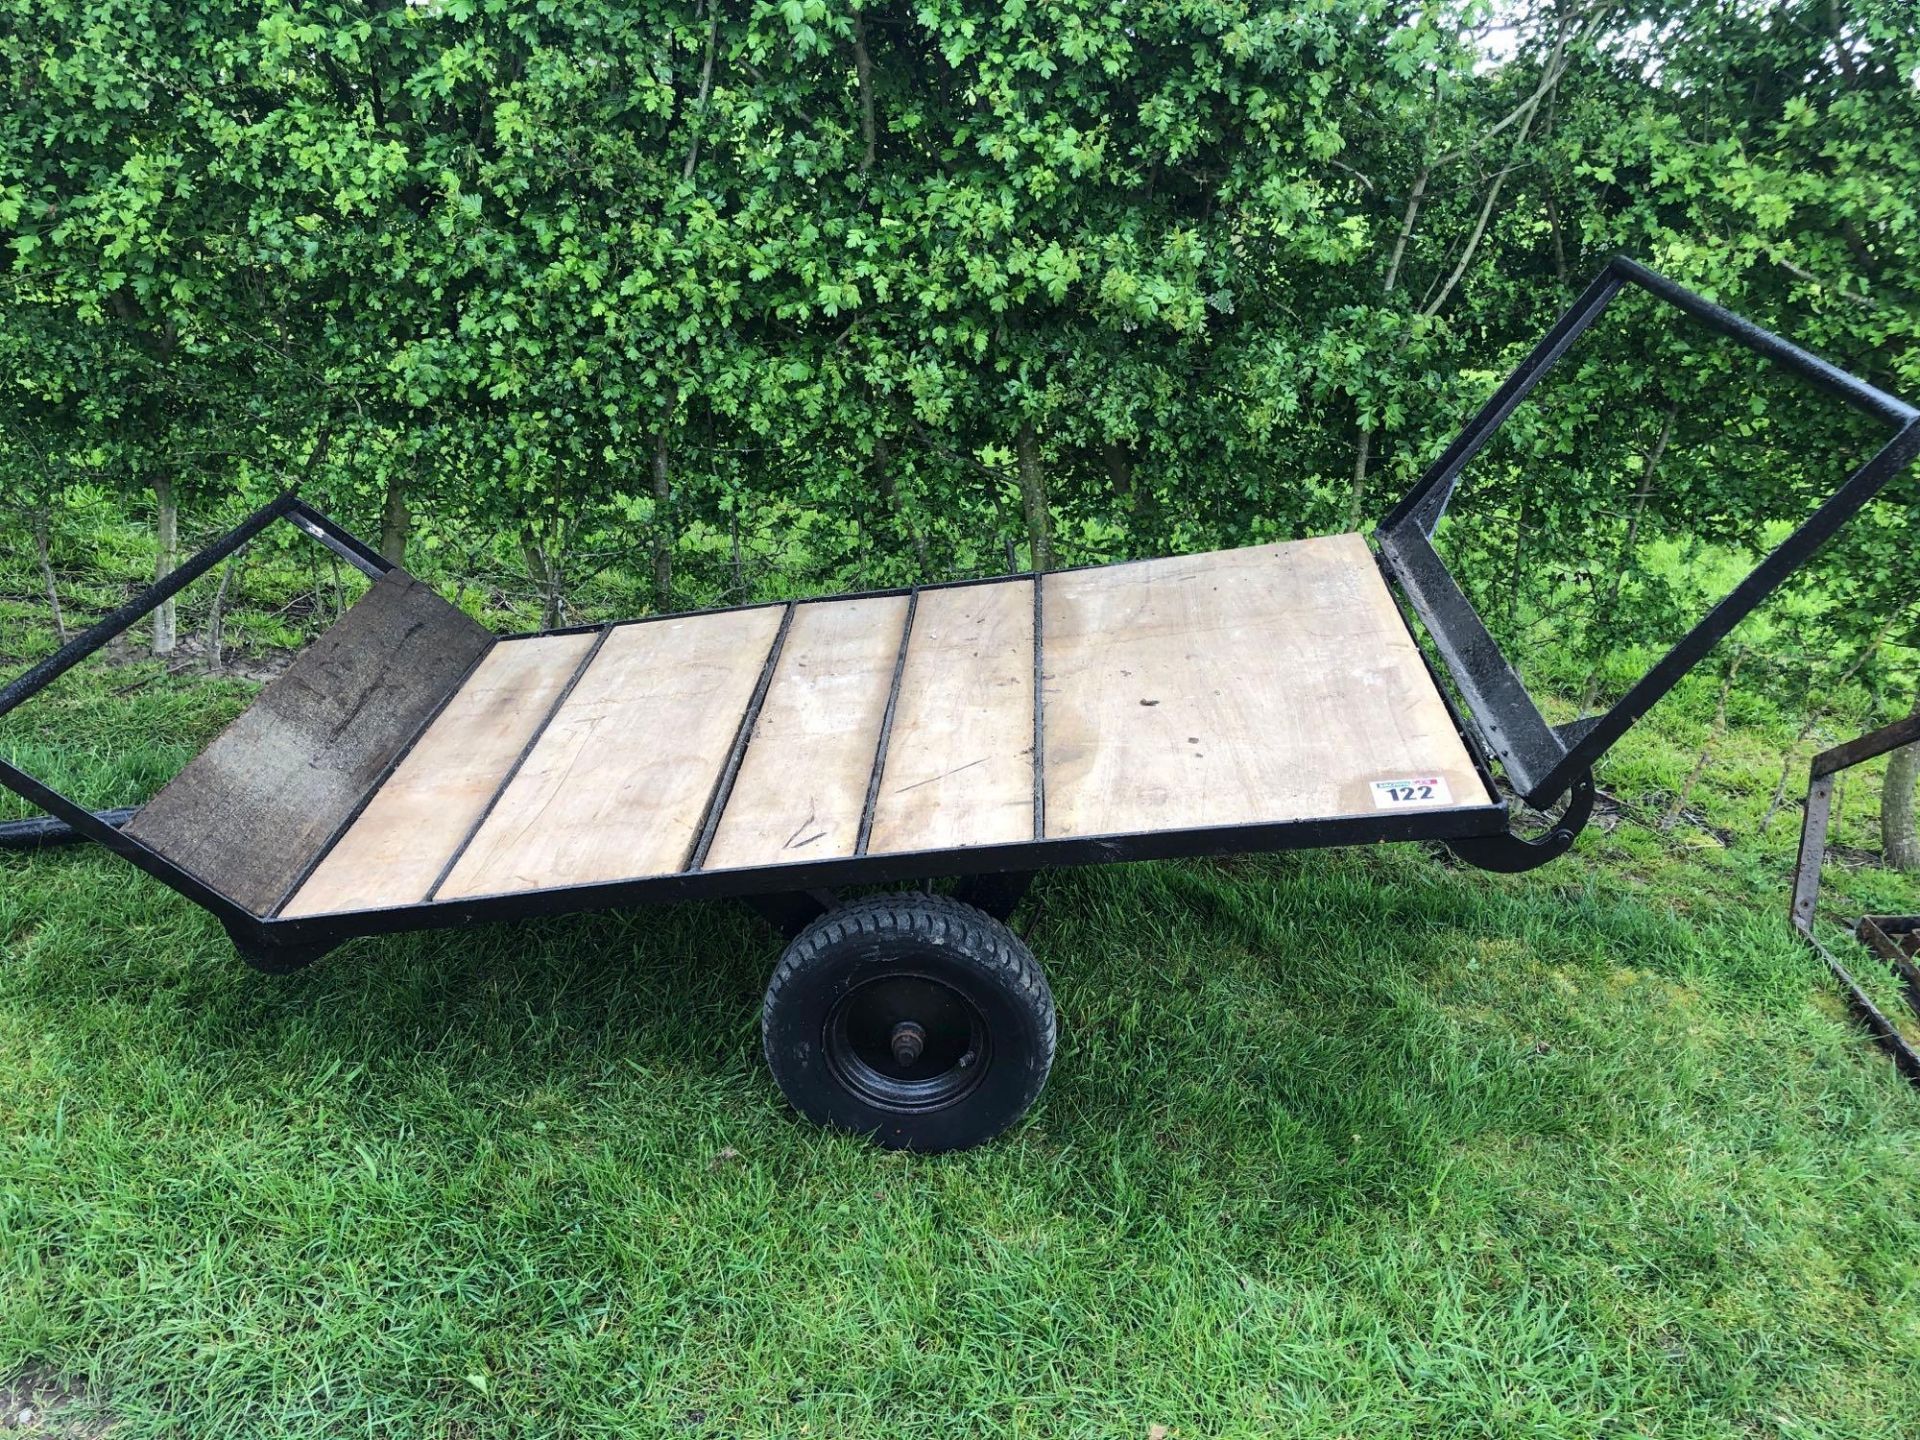 Single axle garden trailer